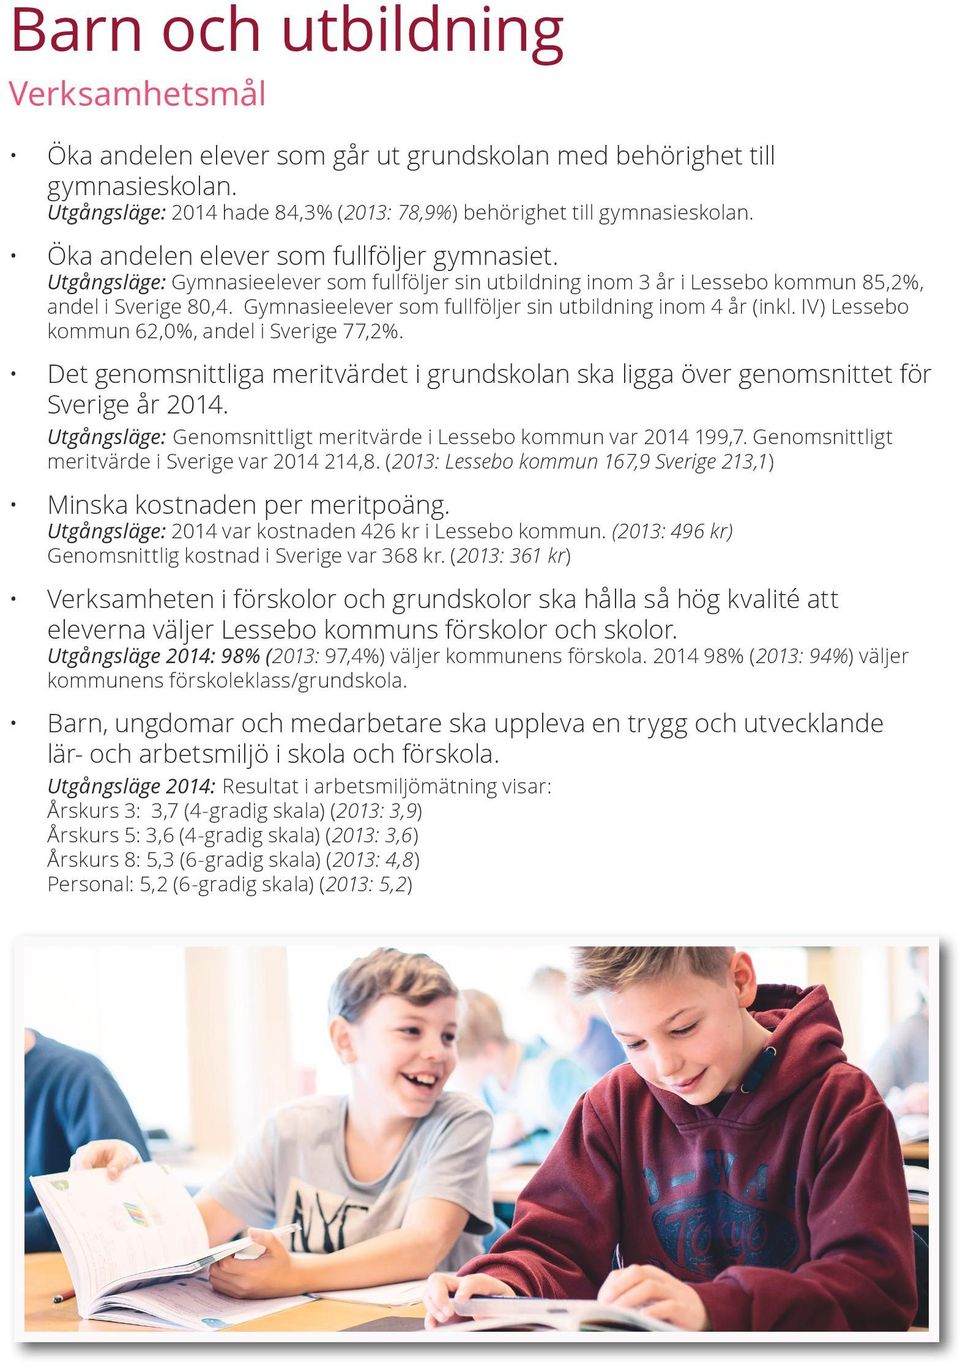 Gymnasieelever som fullföljer sin utbildning inom 4 år (inkl. IV) Lessebo kommun 62,0%, andel i Sverige 77,2%.